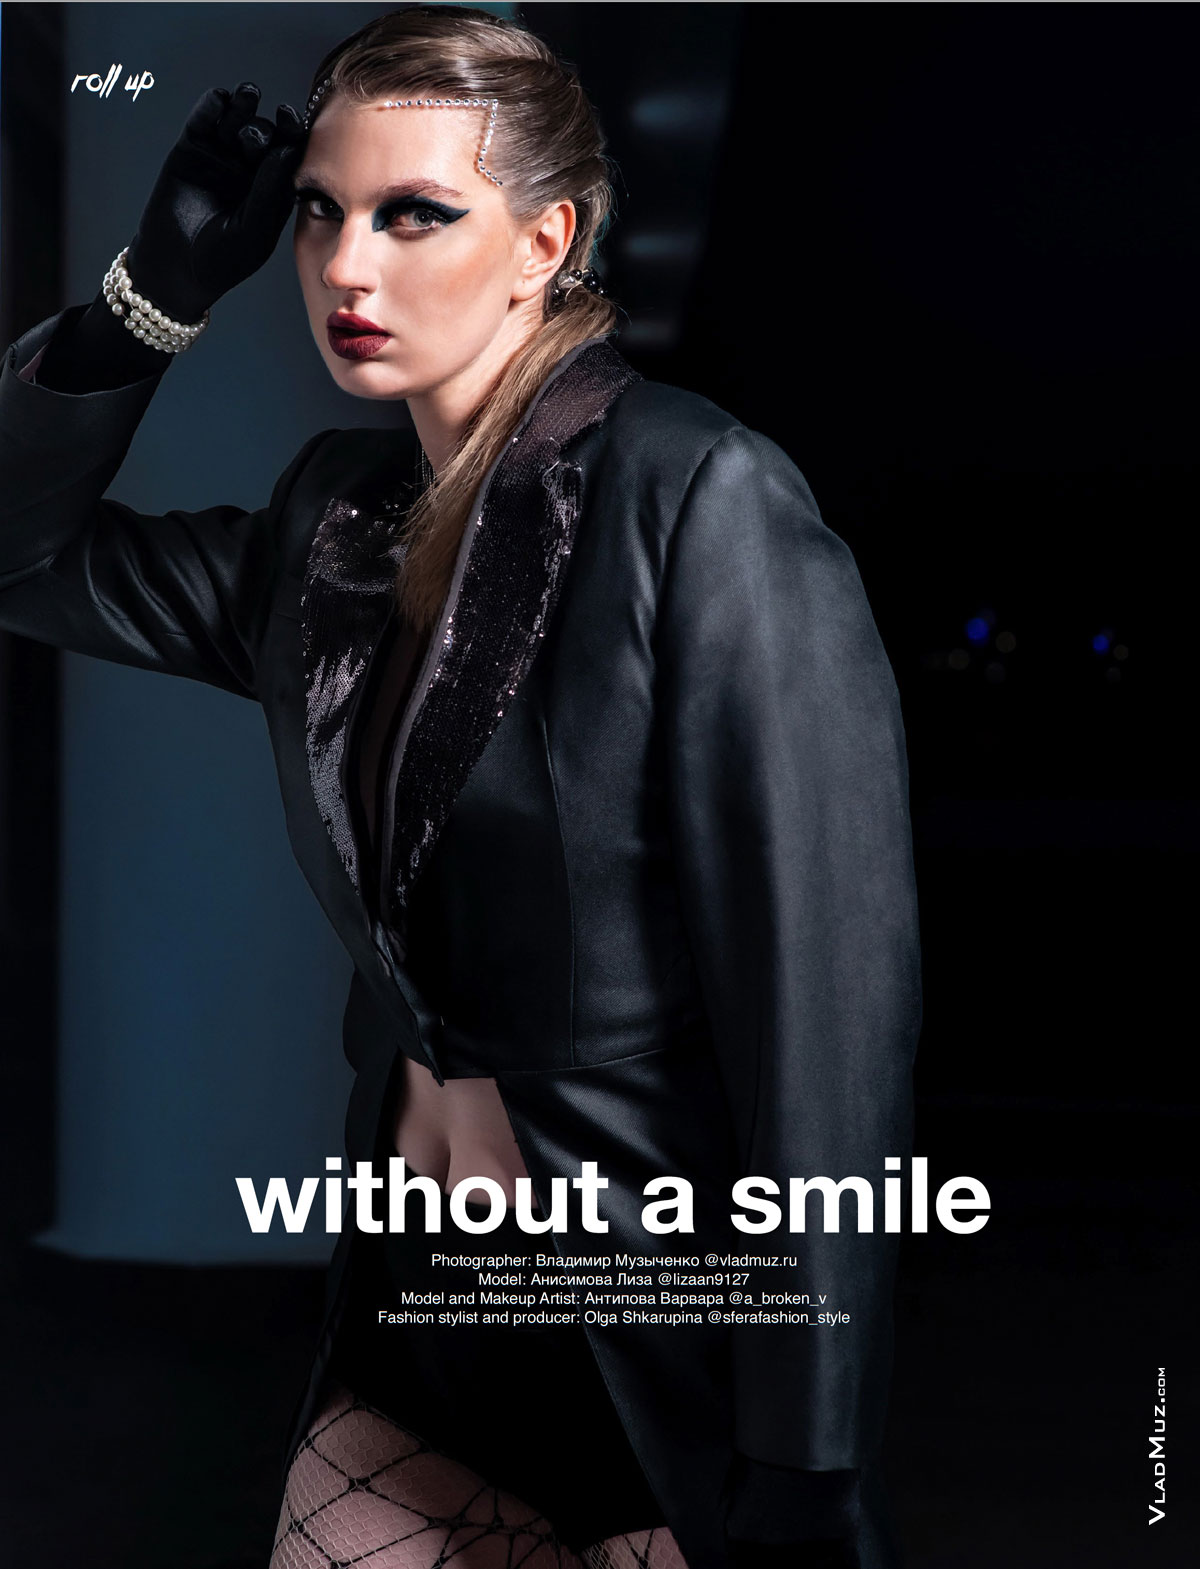 Фото девушки-модели в журнале Roll Up Magazine под заголовком “without a smile” — «без улыбки»